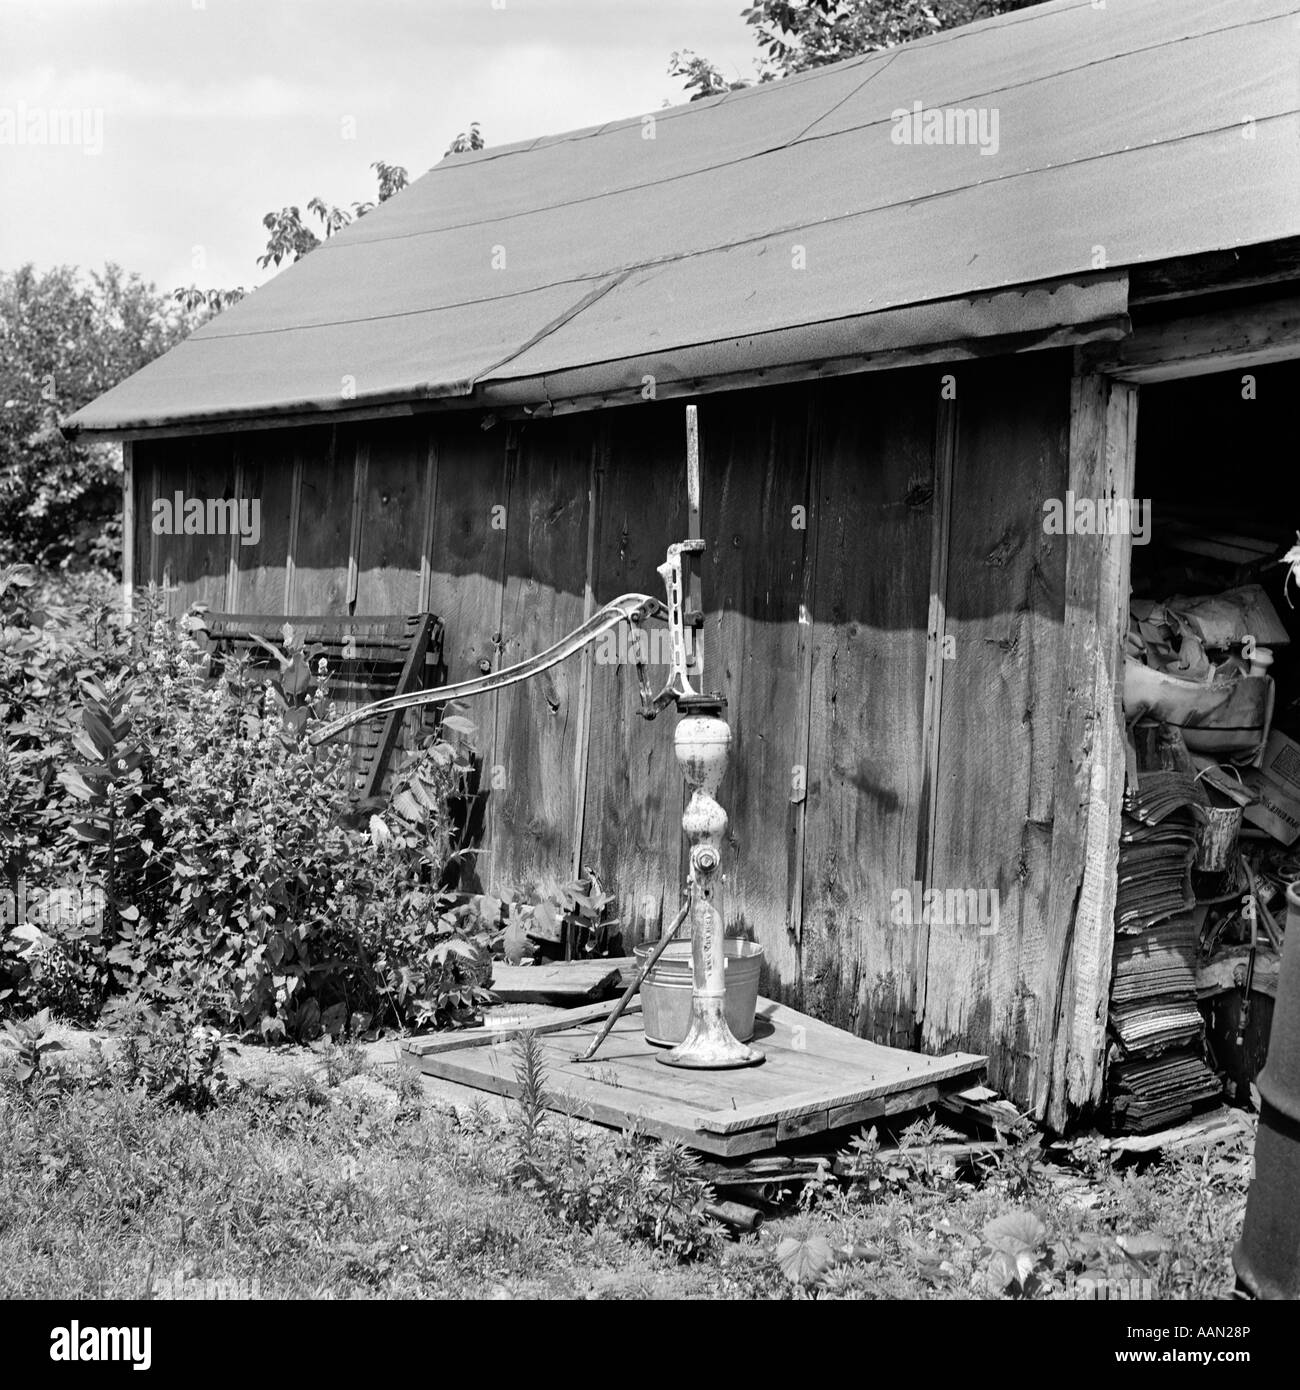 Old Water Pump  Old water pumps, Hand water pump, Water pumps